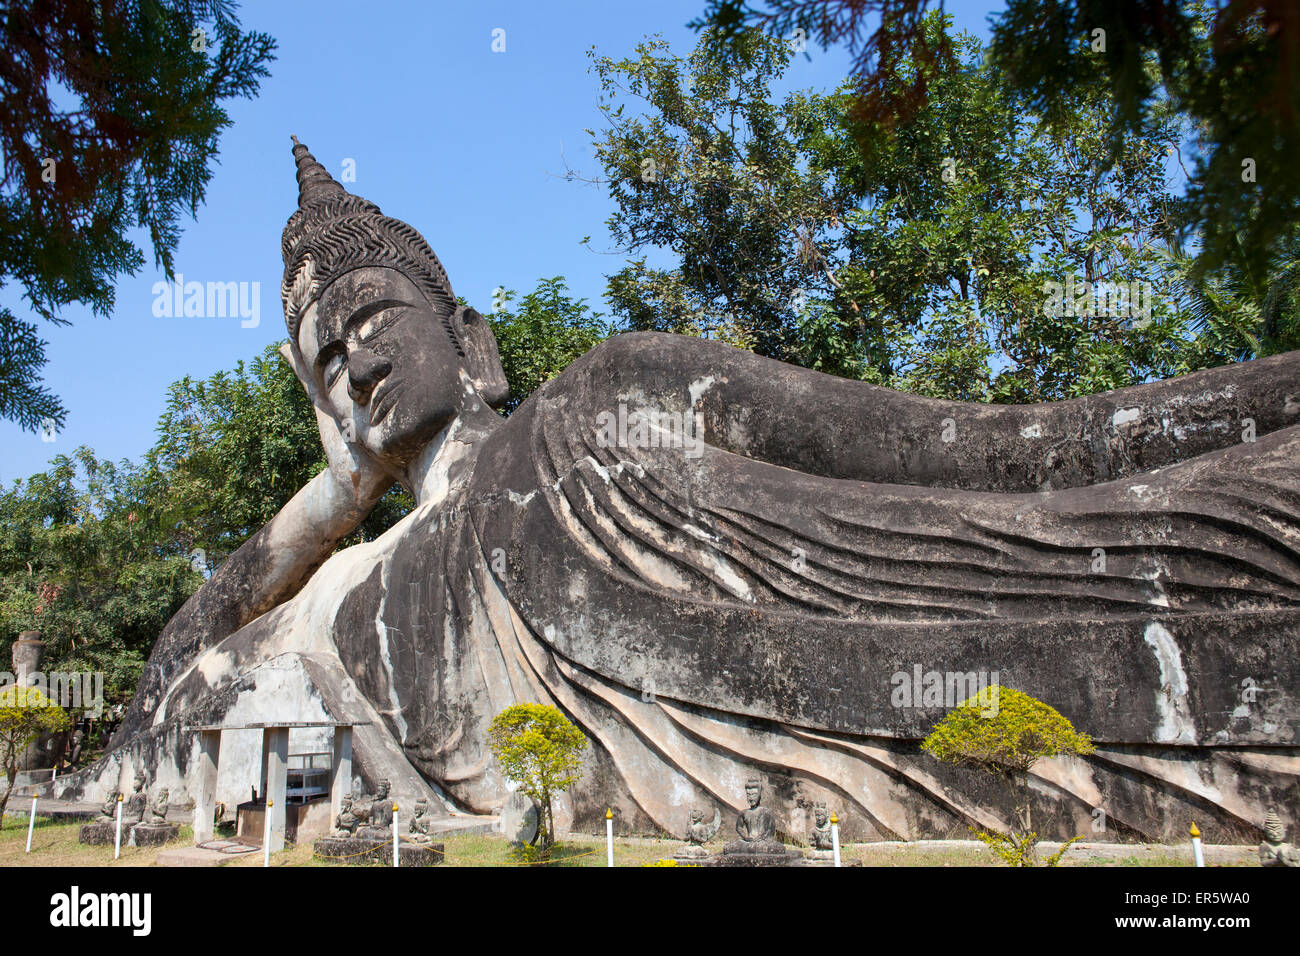 Buddhistischen Skulpturen in Xieng Khuan Buddha Park in Vientiane, der Hauptstadt von Laos, Asien Stockfoto